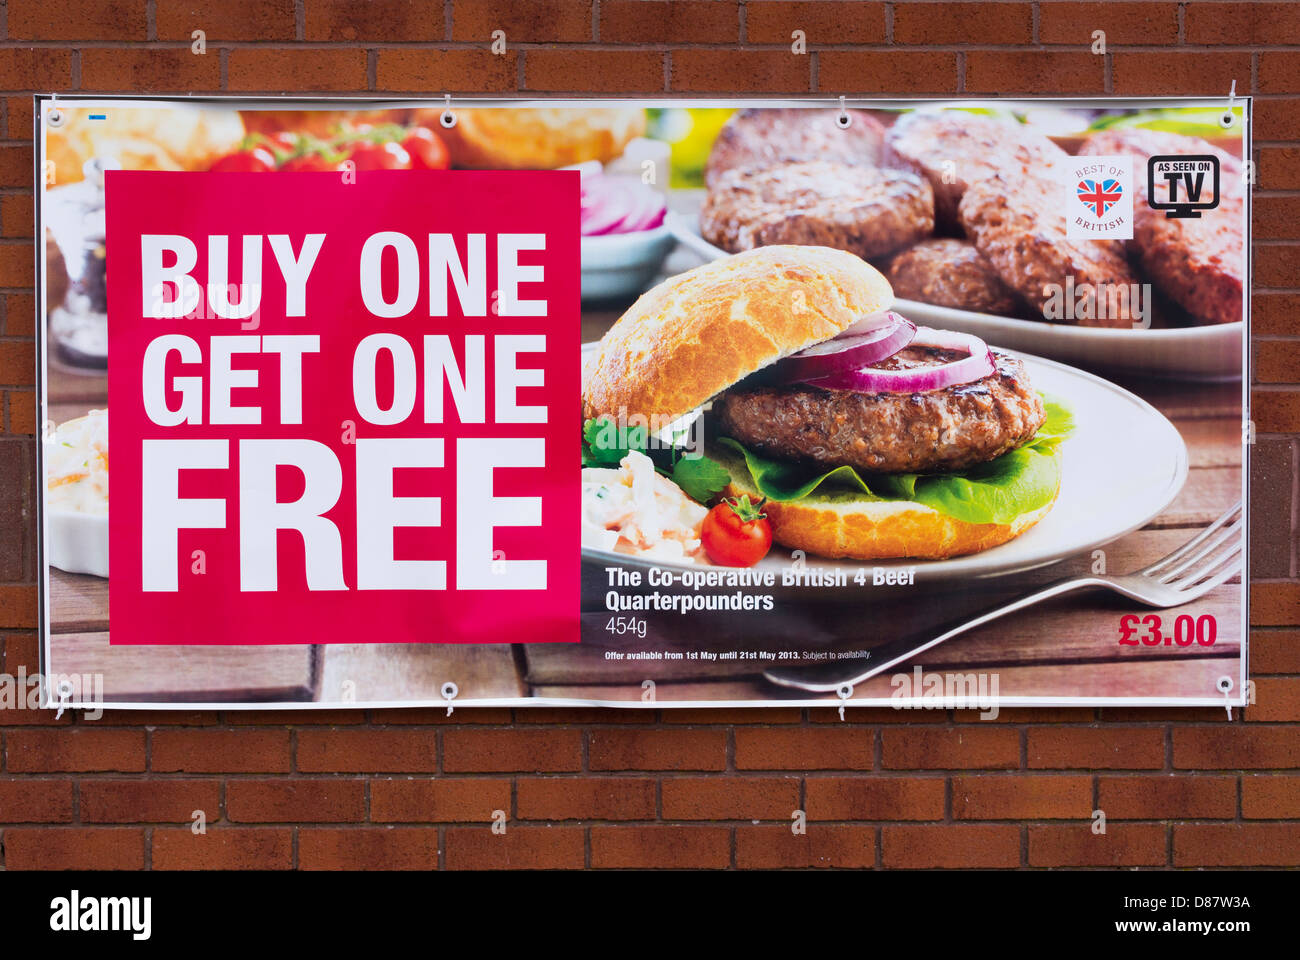 Kaufen Sie ein erhalten Sie ein kostenloses Essen Deal für billige Burger auf einem Poster von einem Coop-Supermarkt Ladenfront, UK Stockfoto